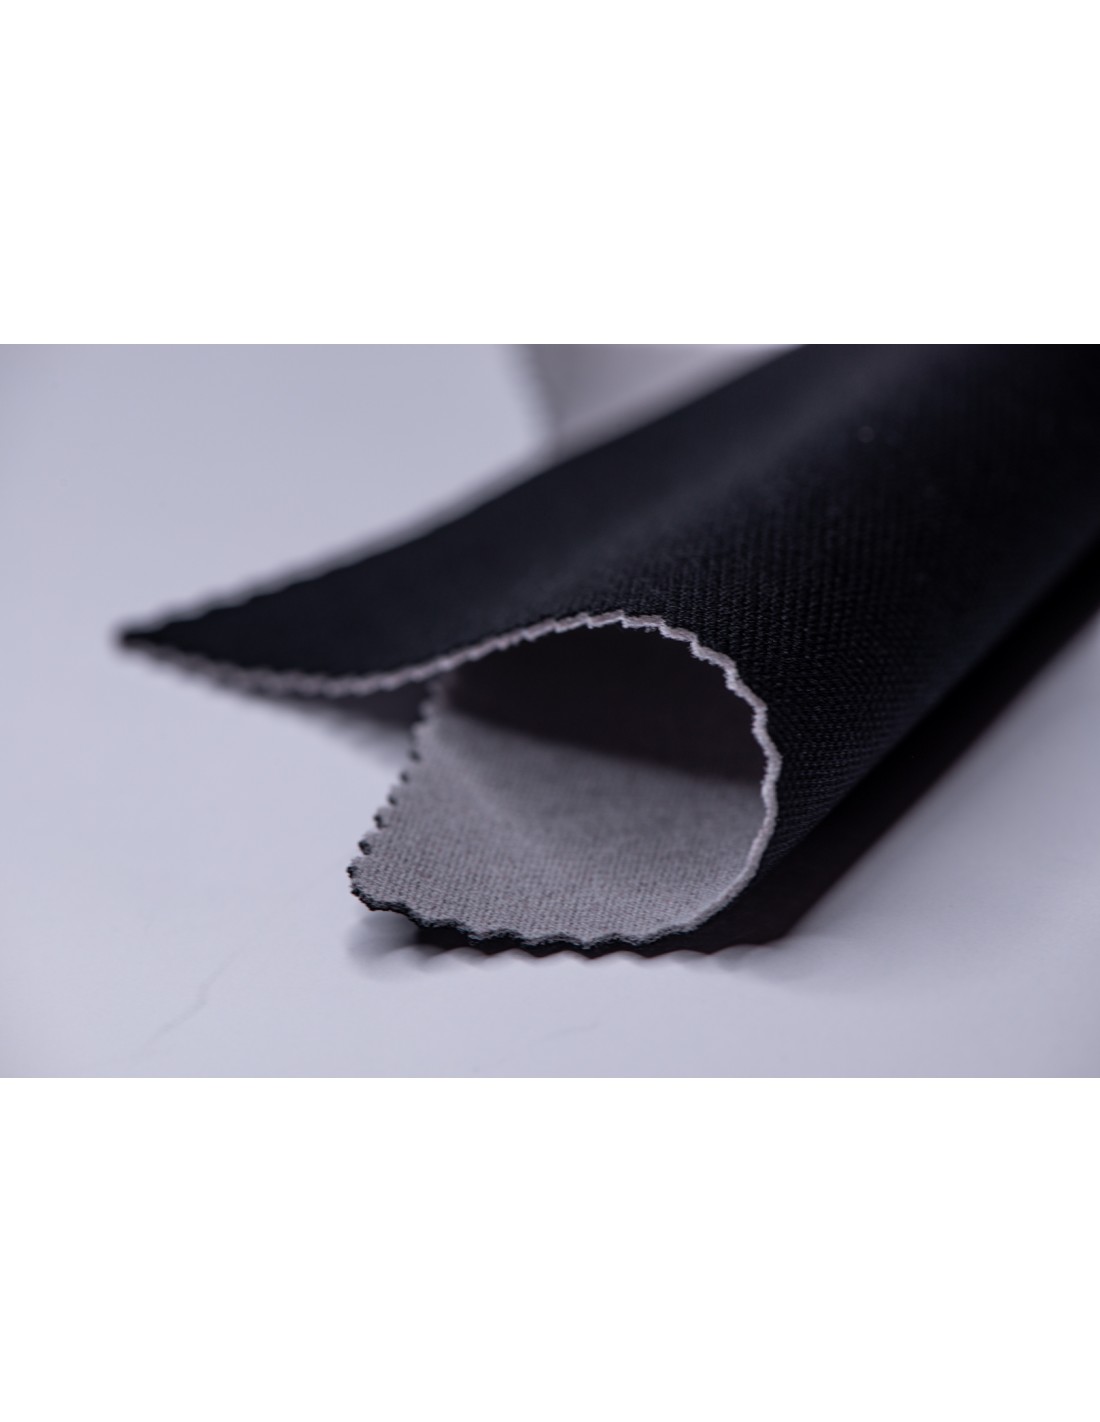 Claves para tapizar tu coche - Los tejidos más resistentes